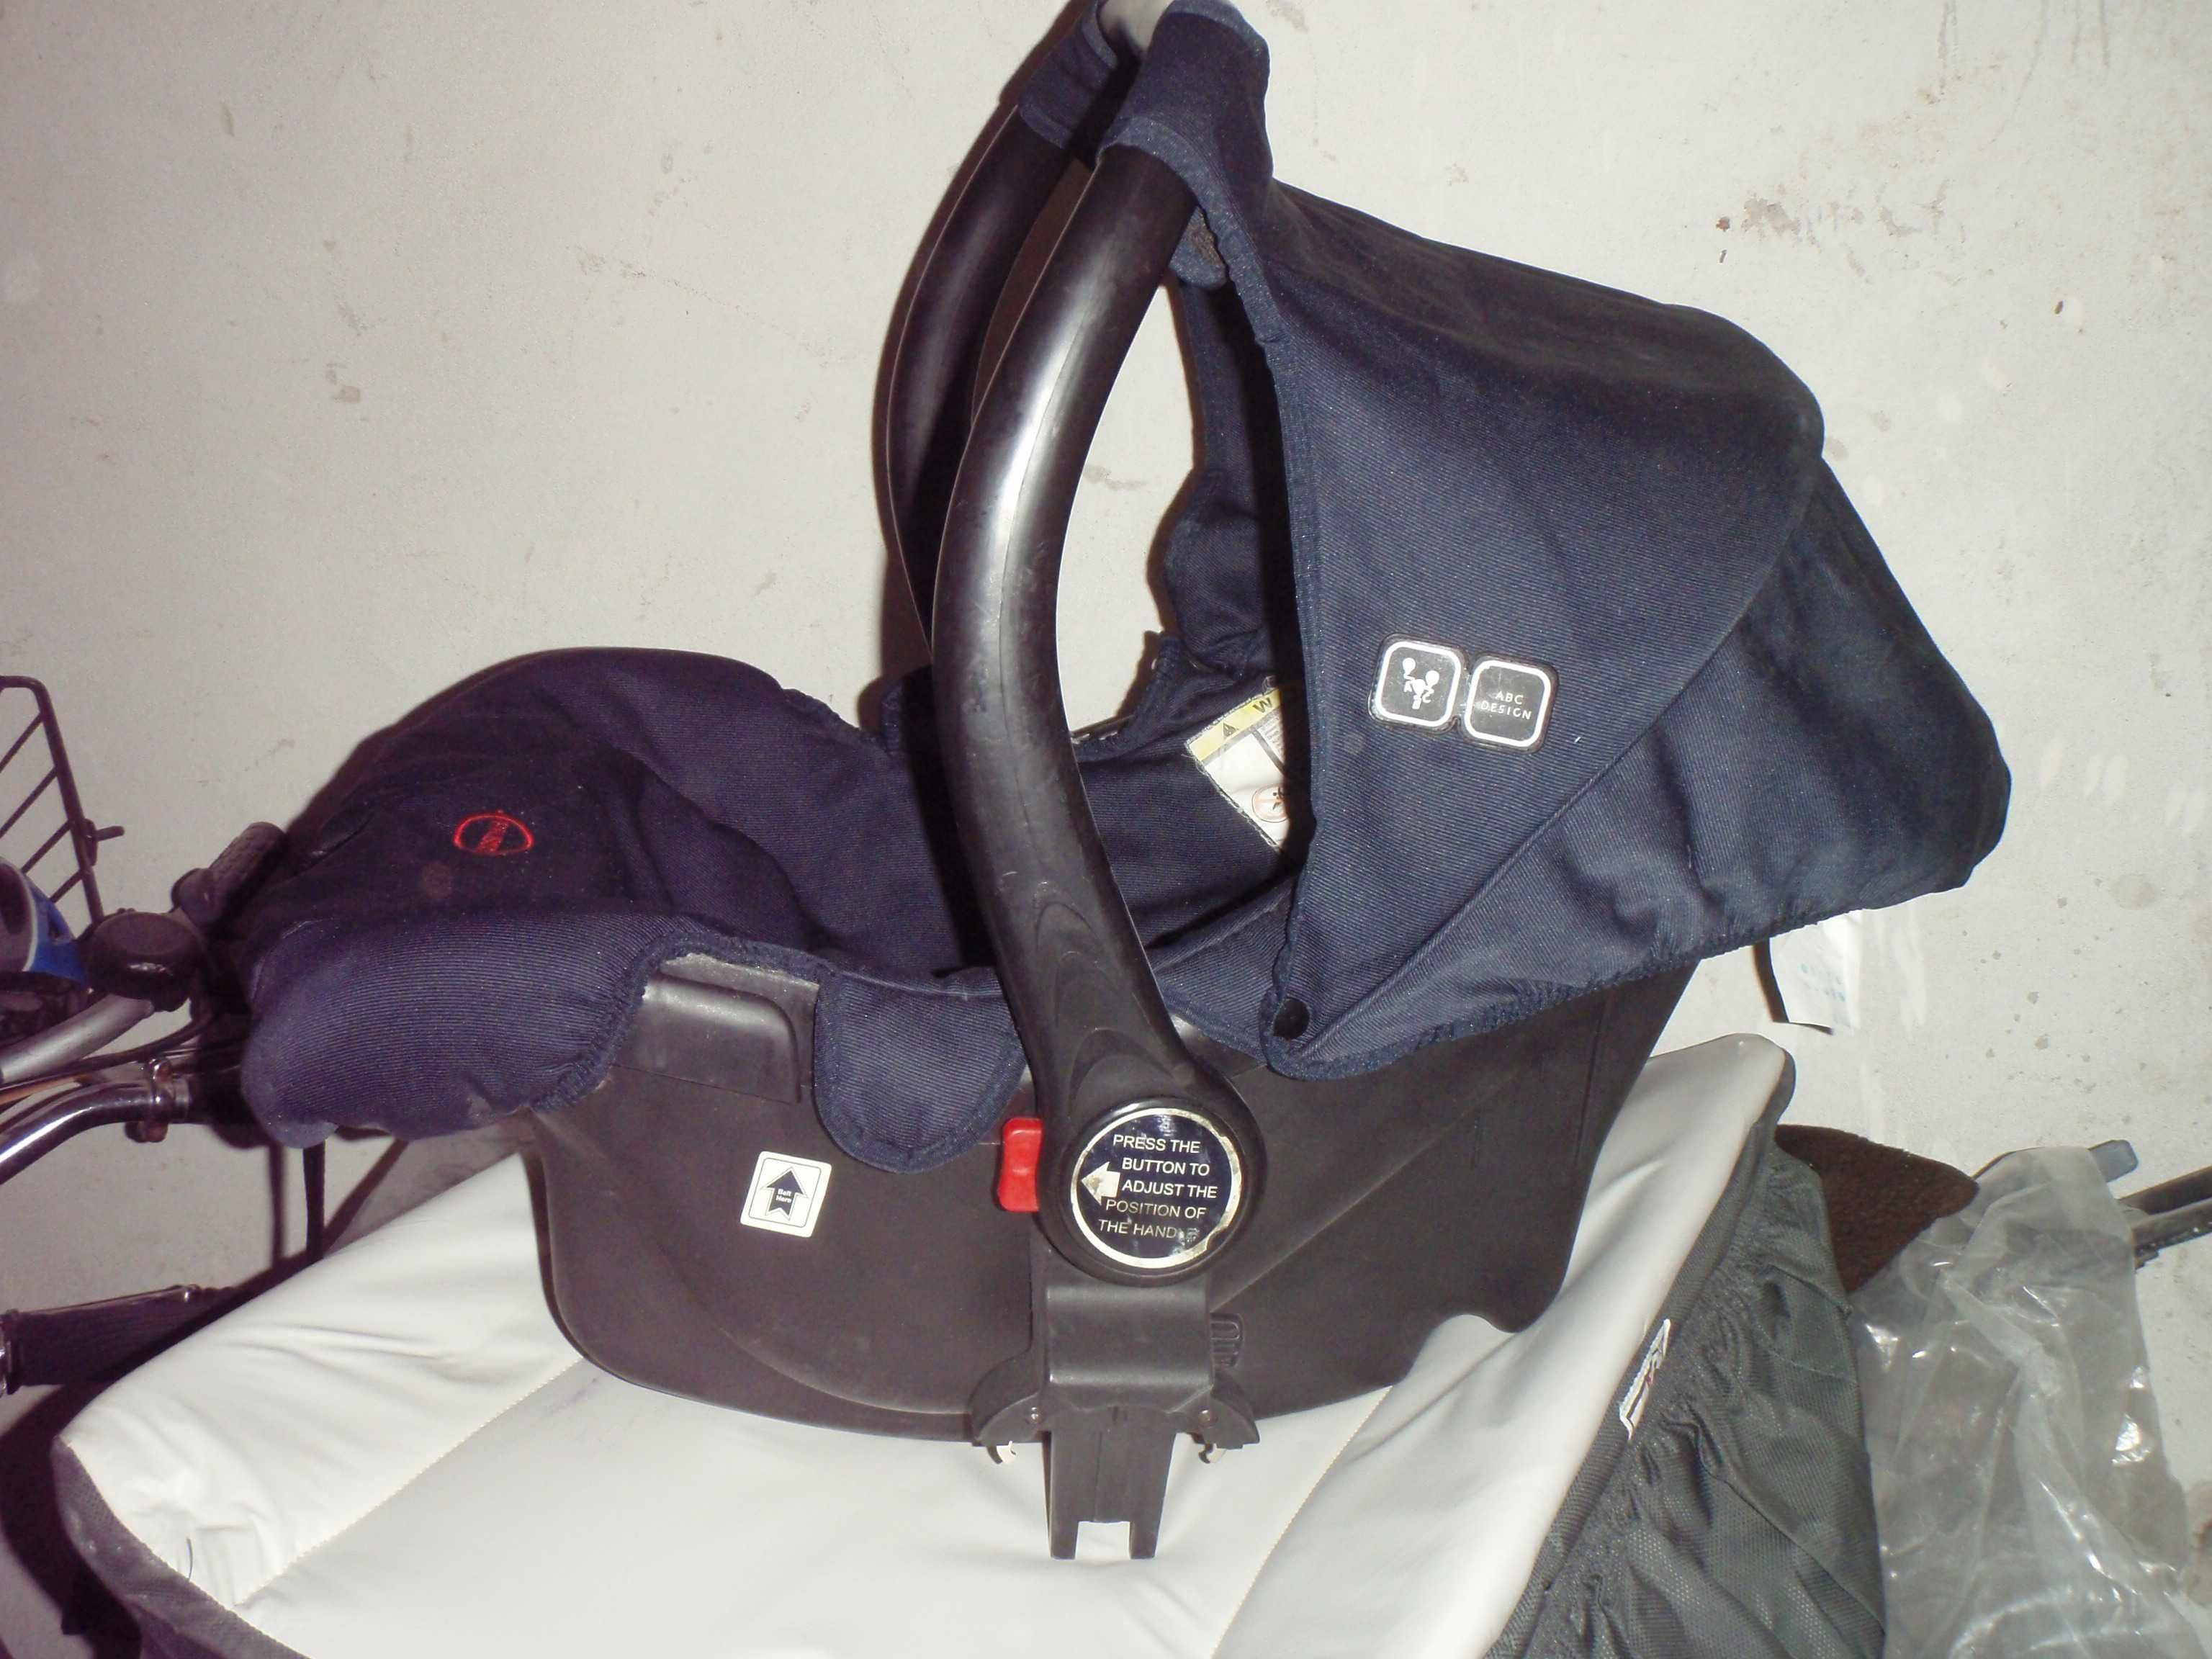 Wózek spacerowy ASTRO + przewijak + fotelik, nosidło dla noworodka